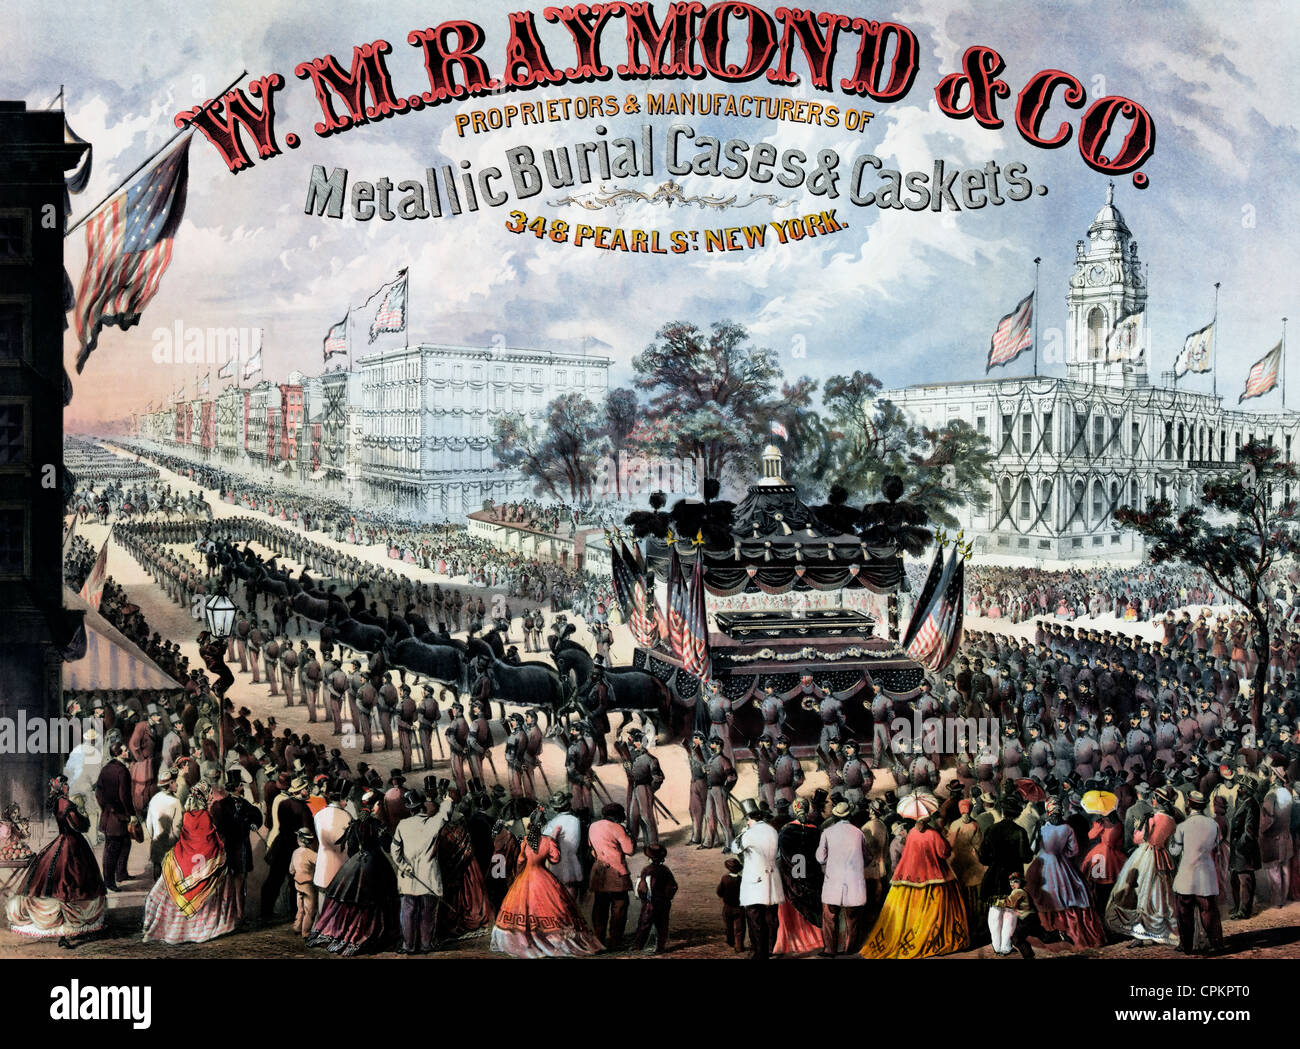 W.m. Raymond & Co. Inhaber & Hersteller von metallischen Bestattung Fällen & Schatullen. 348 Pearl St., New York 1866 Werbung Stockfoto